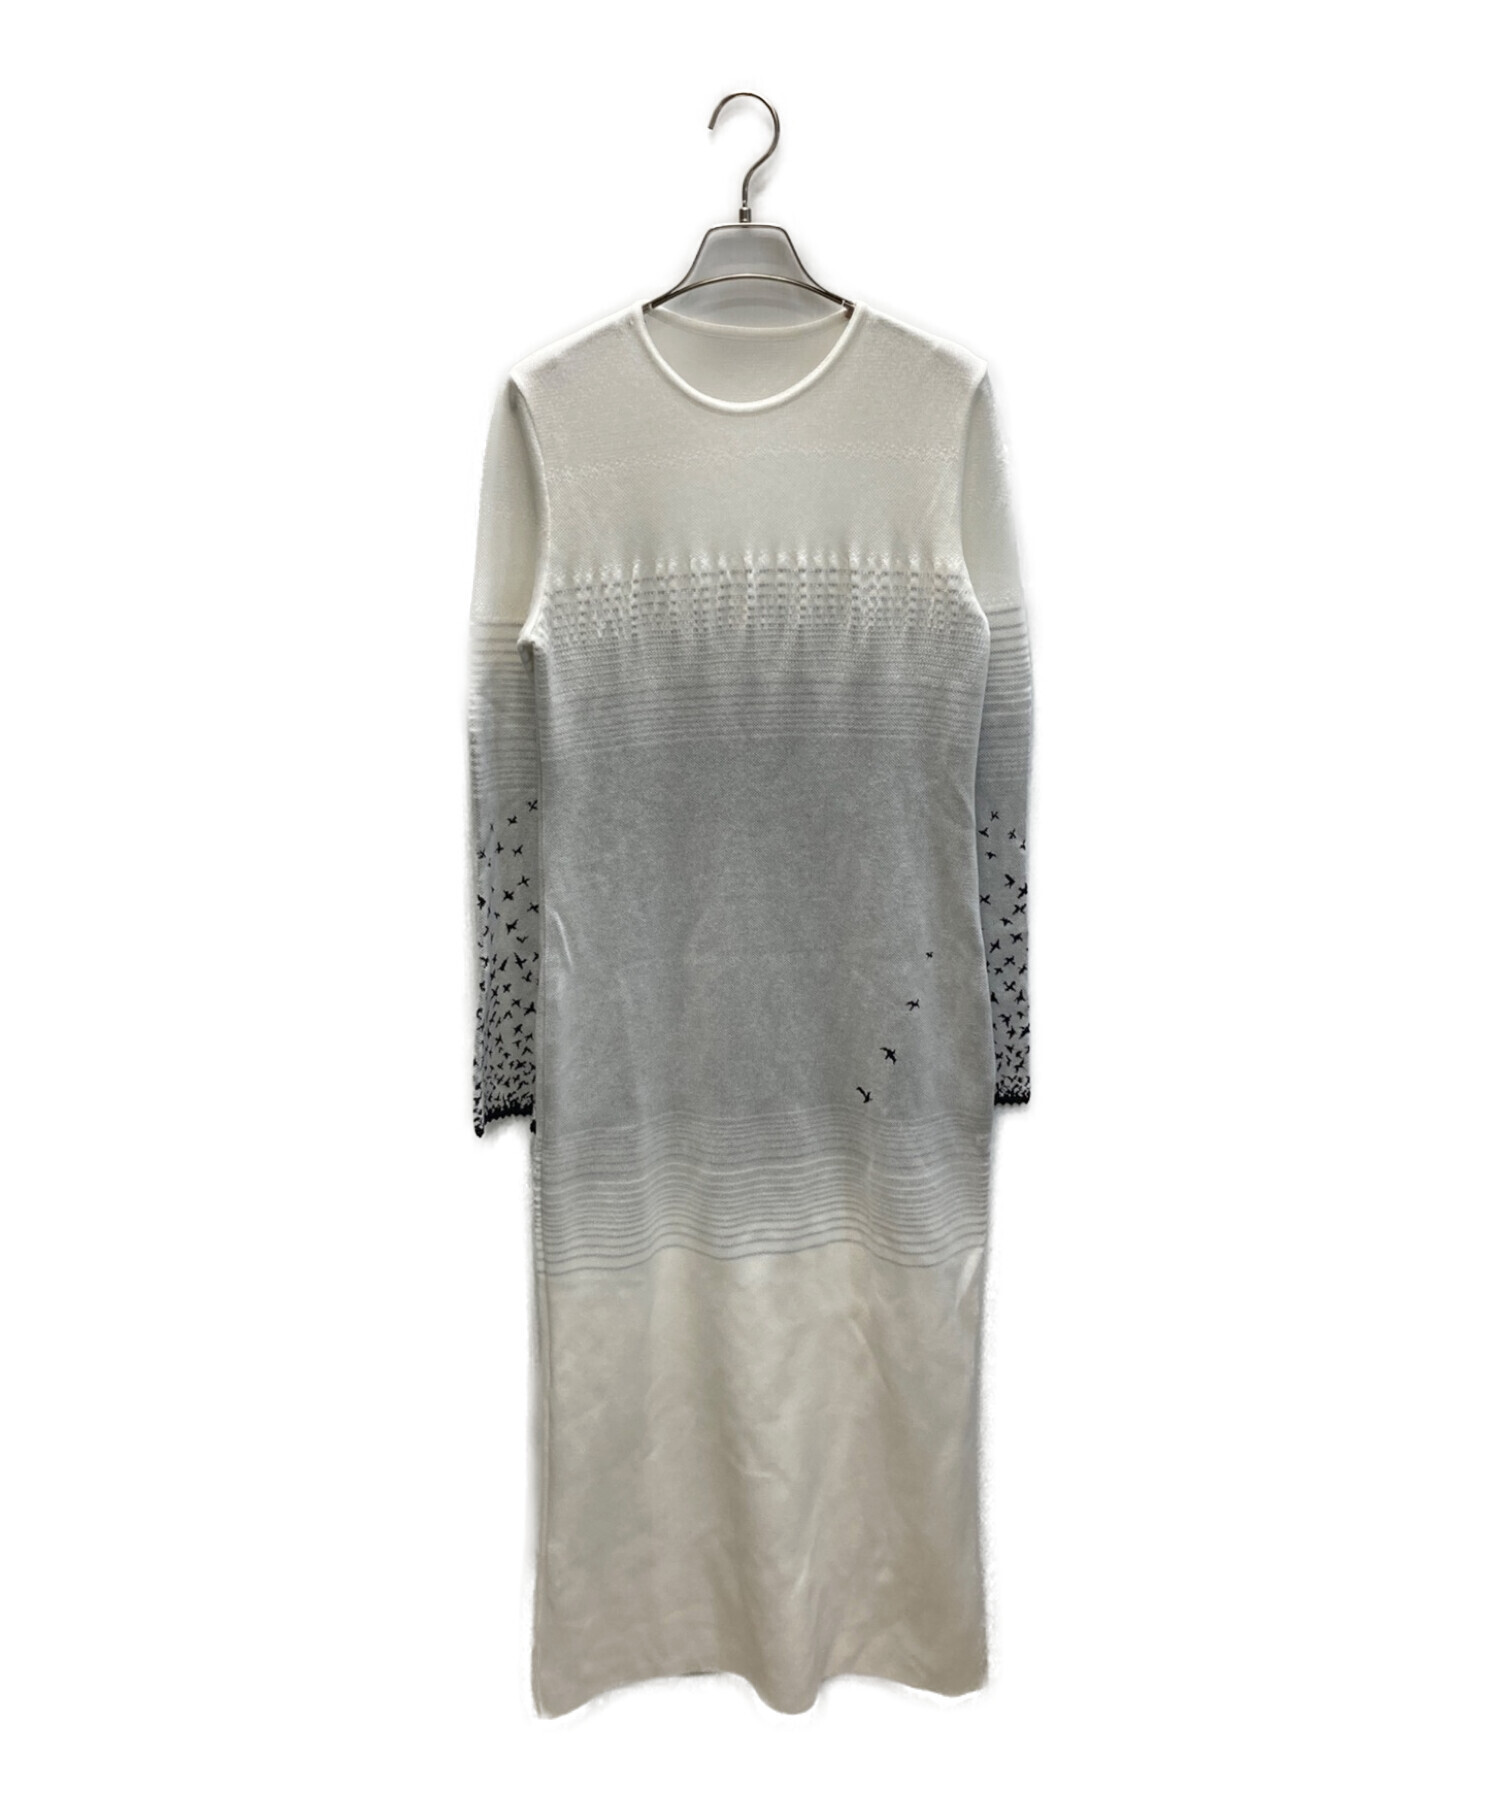 Mame Kurogouchi (マメクロゴウチ) Crane Pattern Jacquard Knitted Dress ホワイト×グレー  サイズ:3